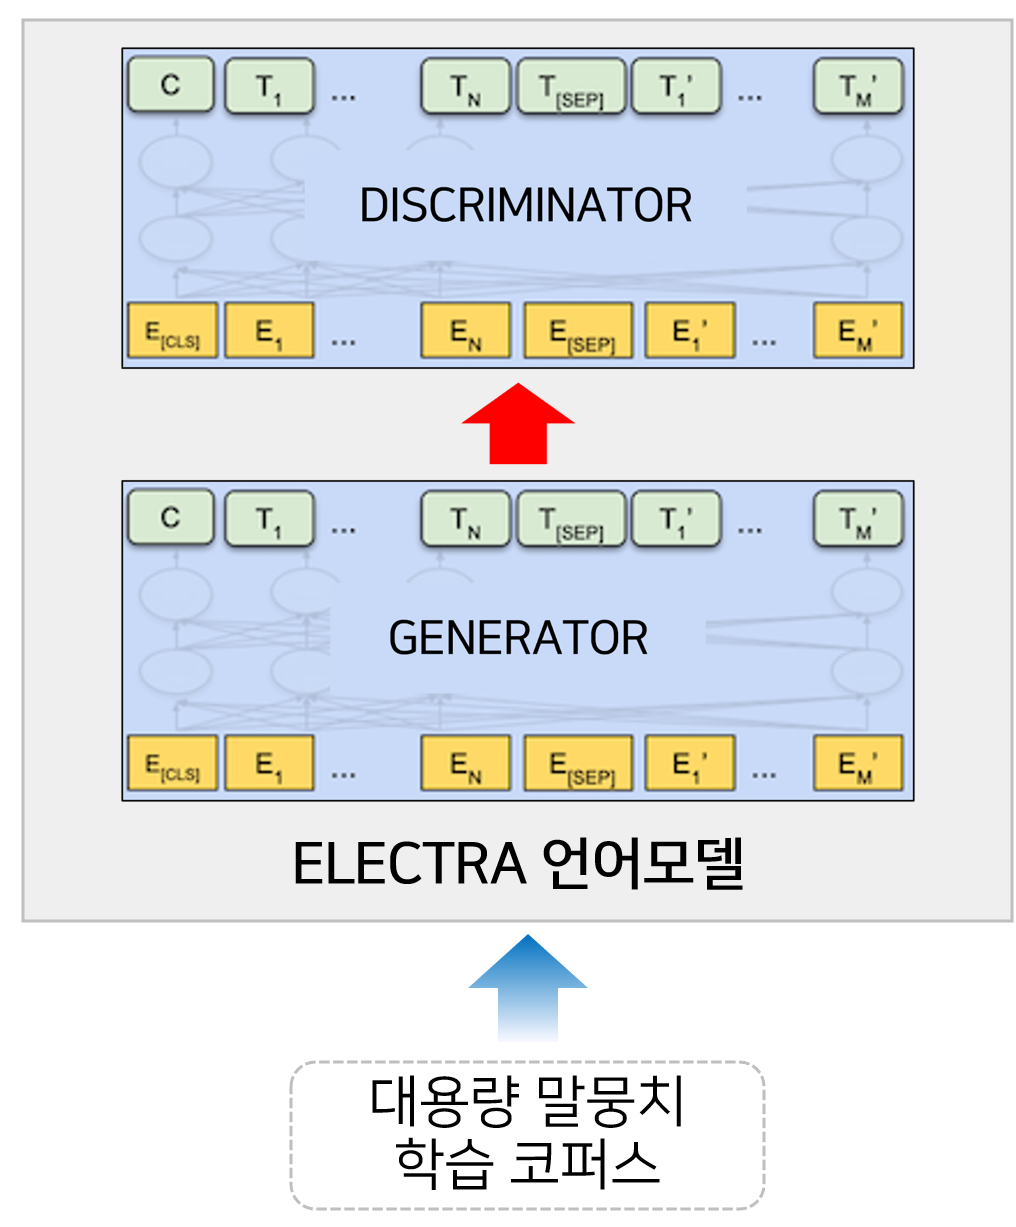 대규모 웹데이터 기반 한국어 말뭉치-모델학습_1_한국어 언어모델 생성 AI 모델링